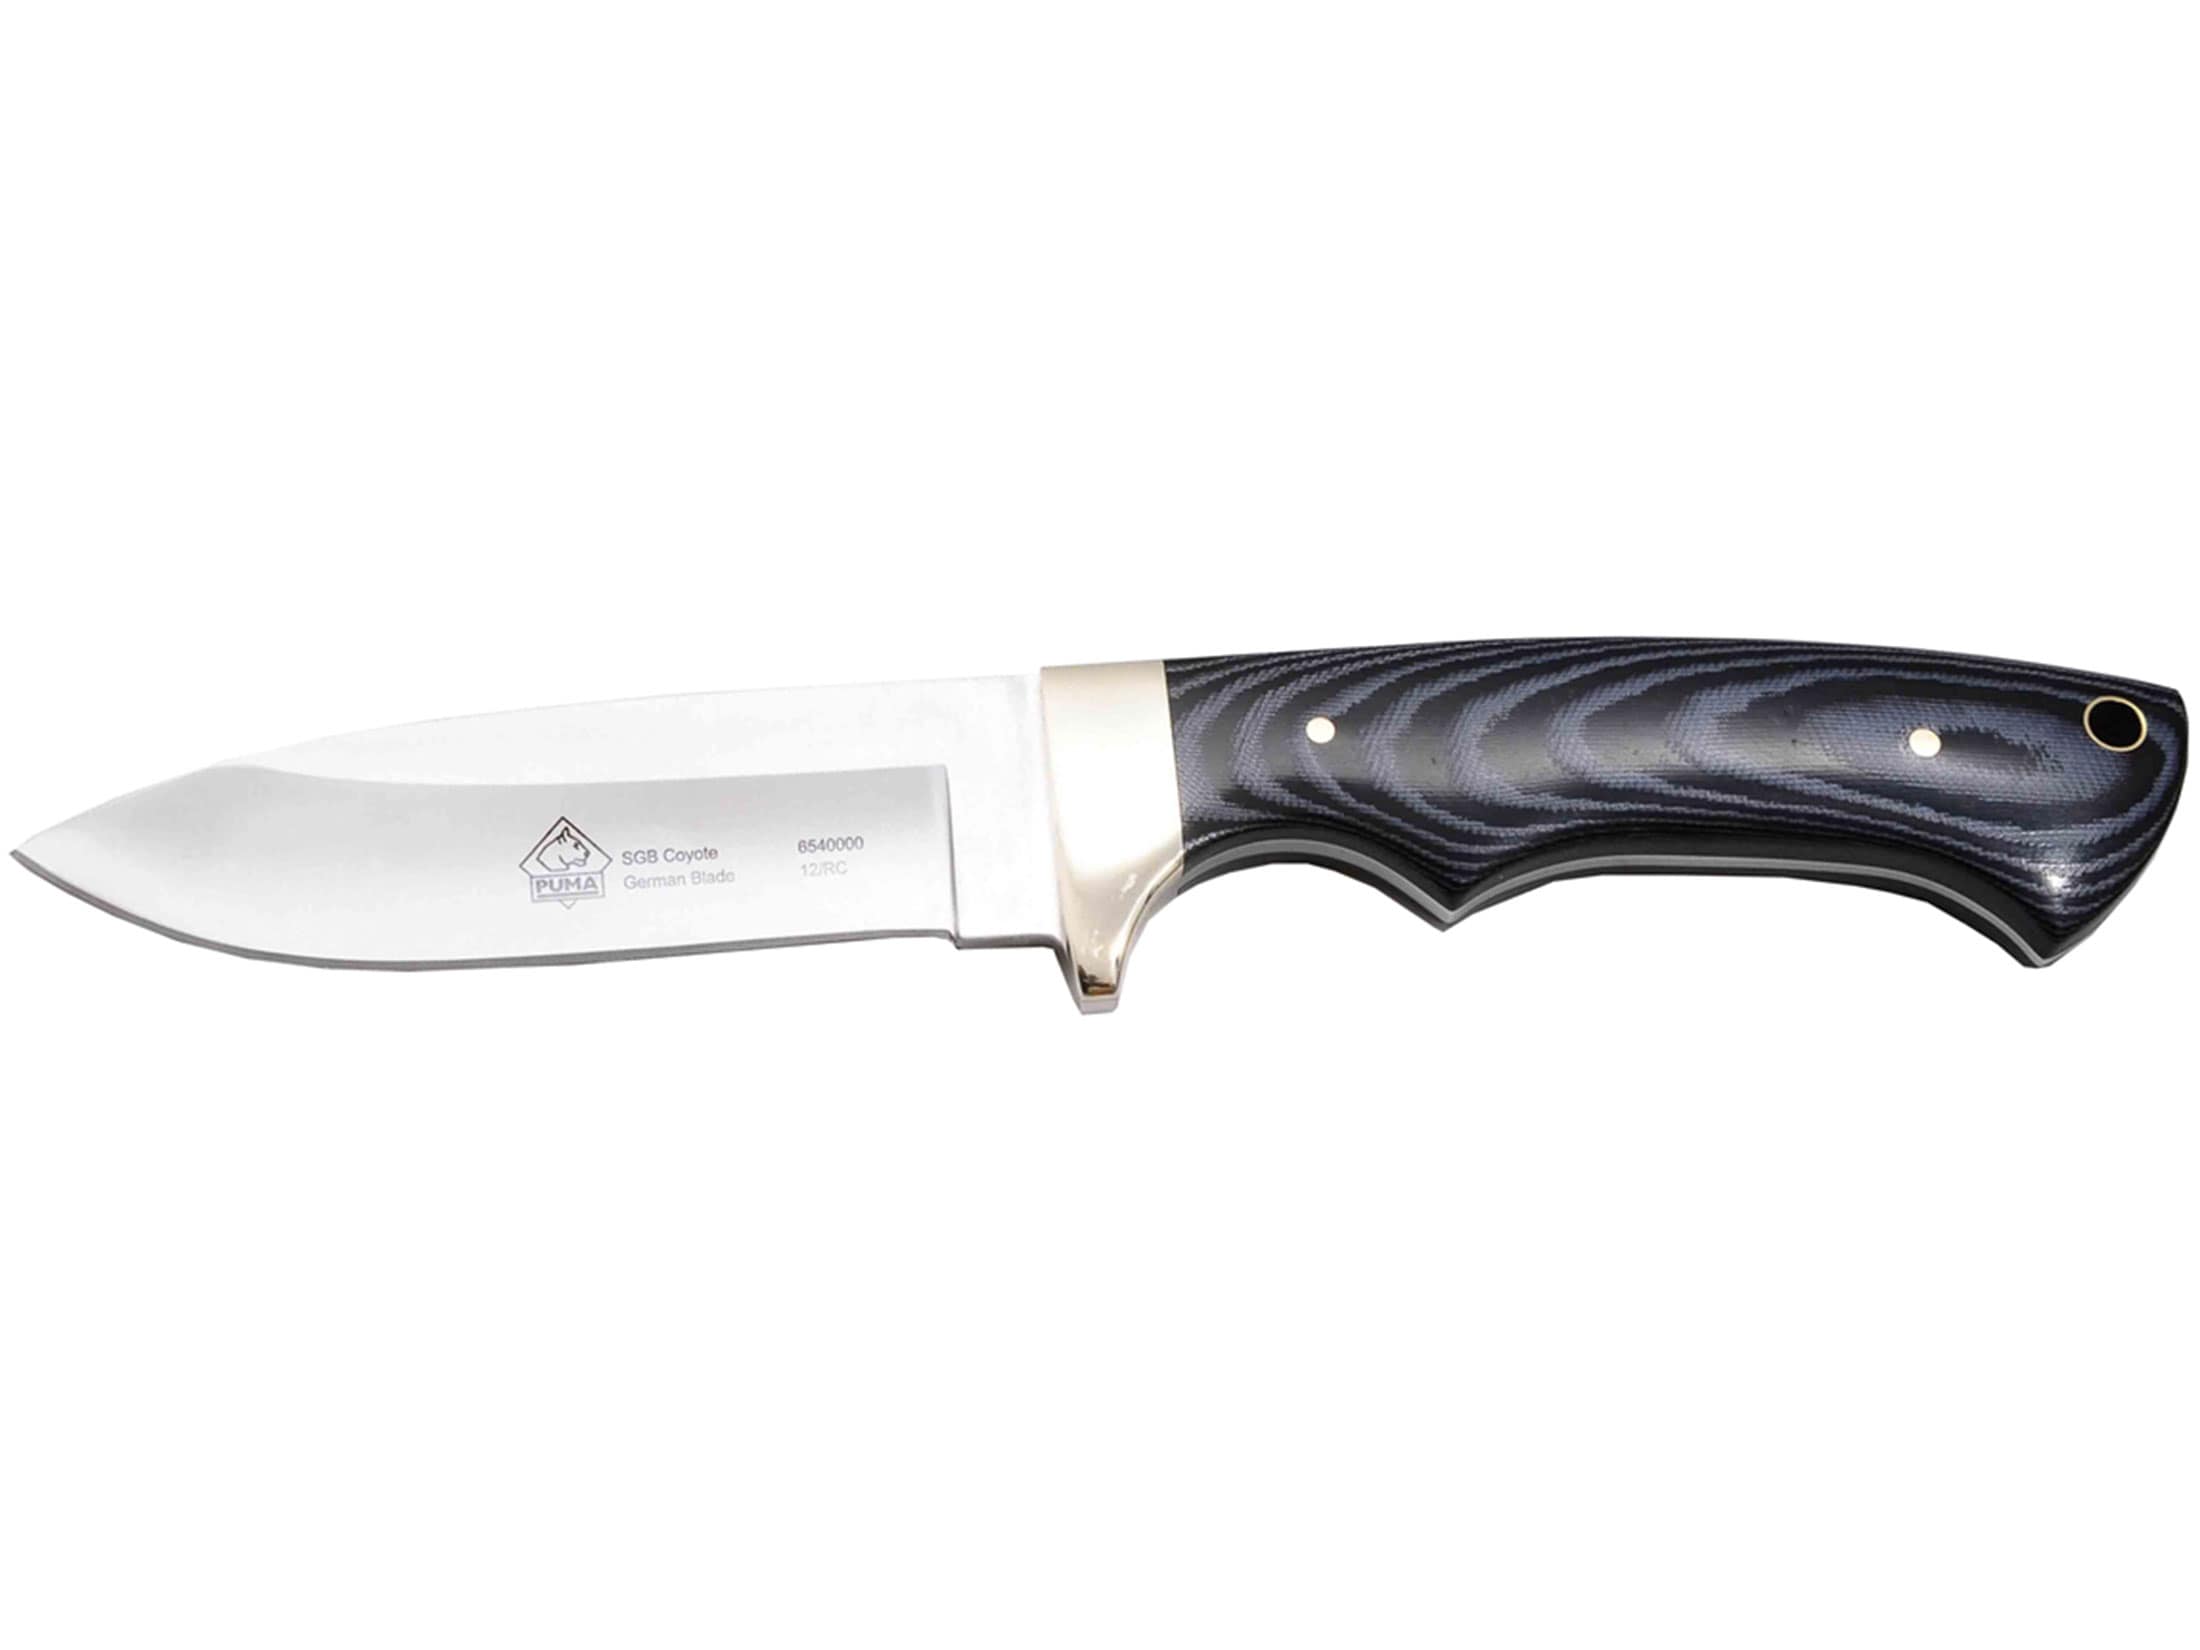 Puma SGB Coyote Fixed Blade Knife 3.8 